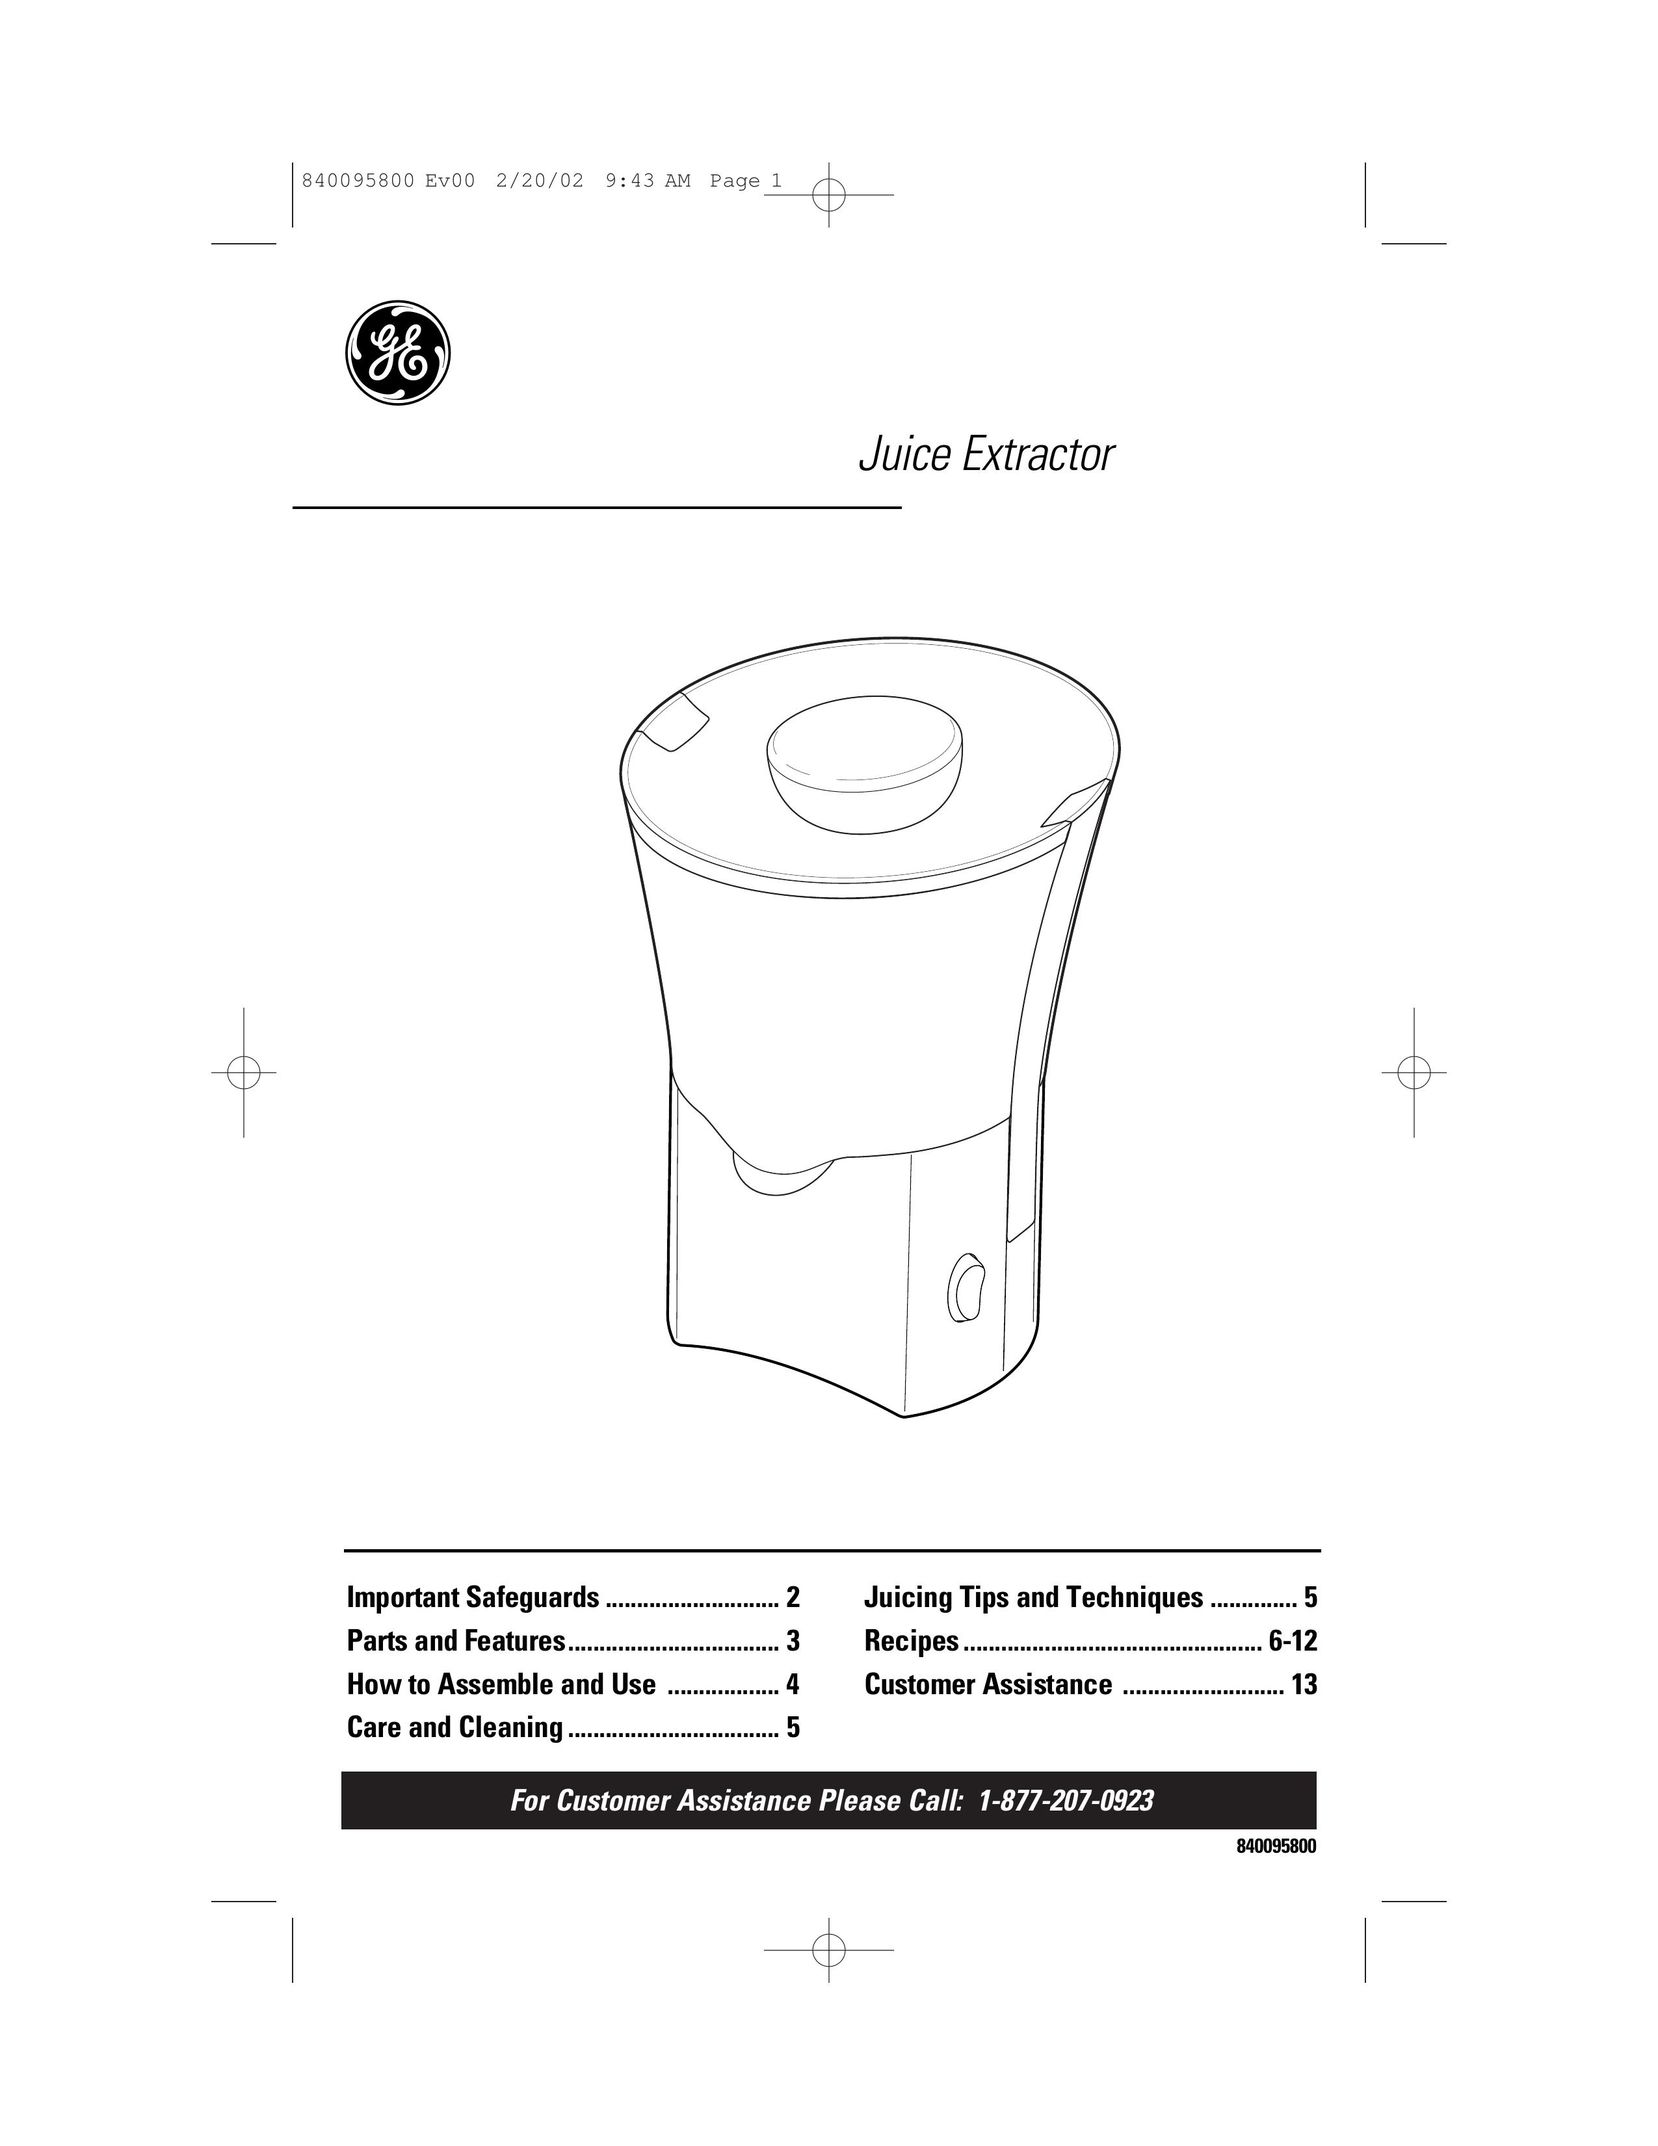 GE 840095800 Juicer User Manual